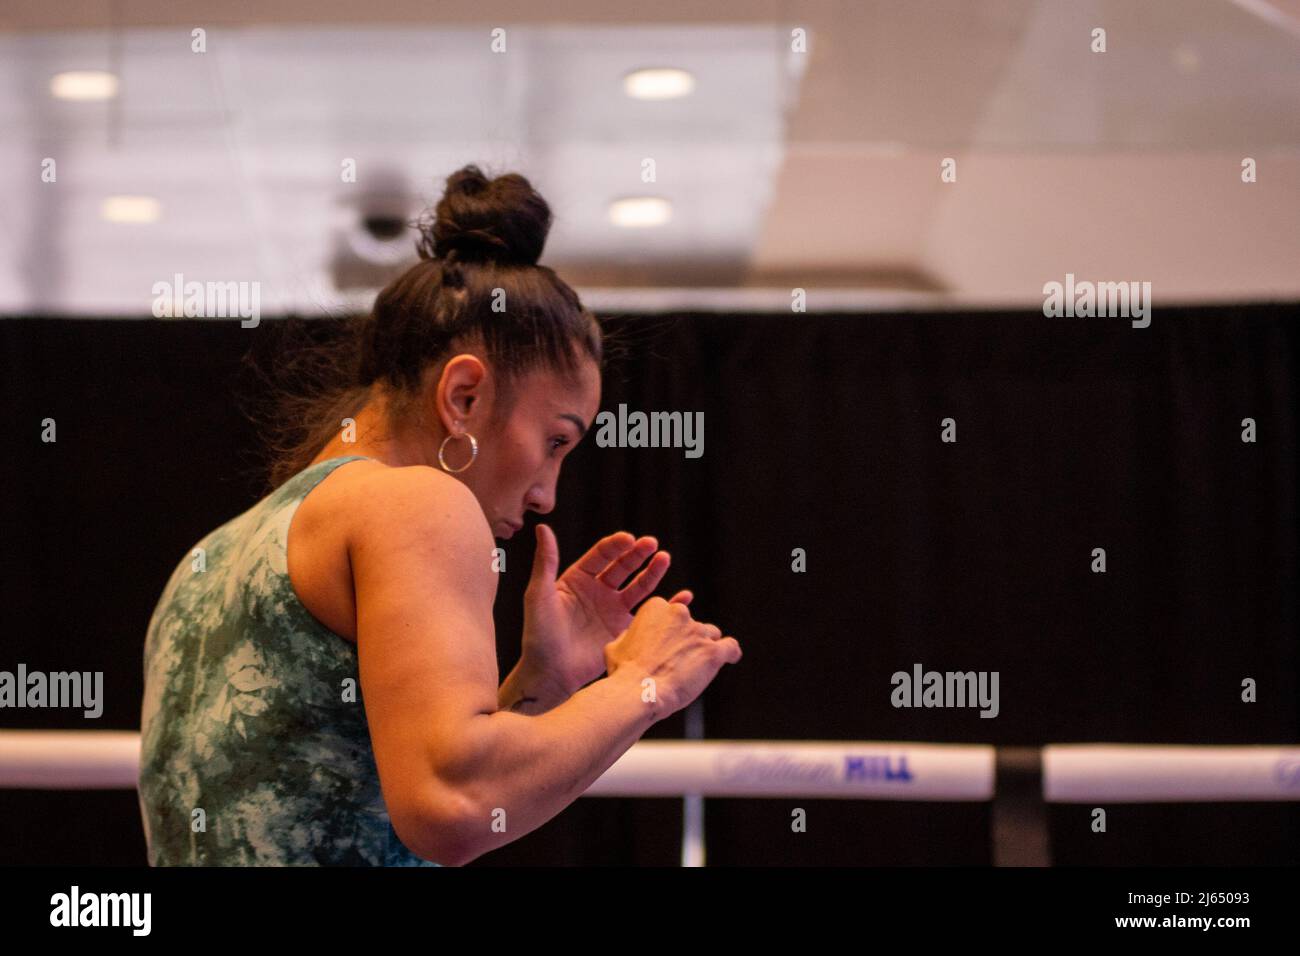 NEW YORK, NY - 27 APRILE: Amanda Serrano durante gli allenamenti aperti prima del suo scontro con Katie Taylor al Madison Square Garden il 27 aprile 2022 a New York, NY, Stati Uniti. (Foto di Matt Davies/PxImages) Credit: PX Images/Alamy Live News Foto Stock